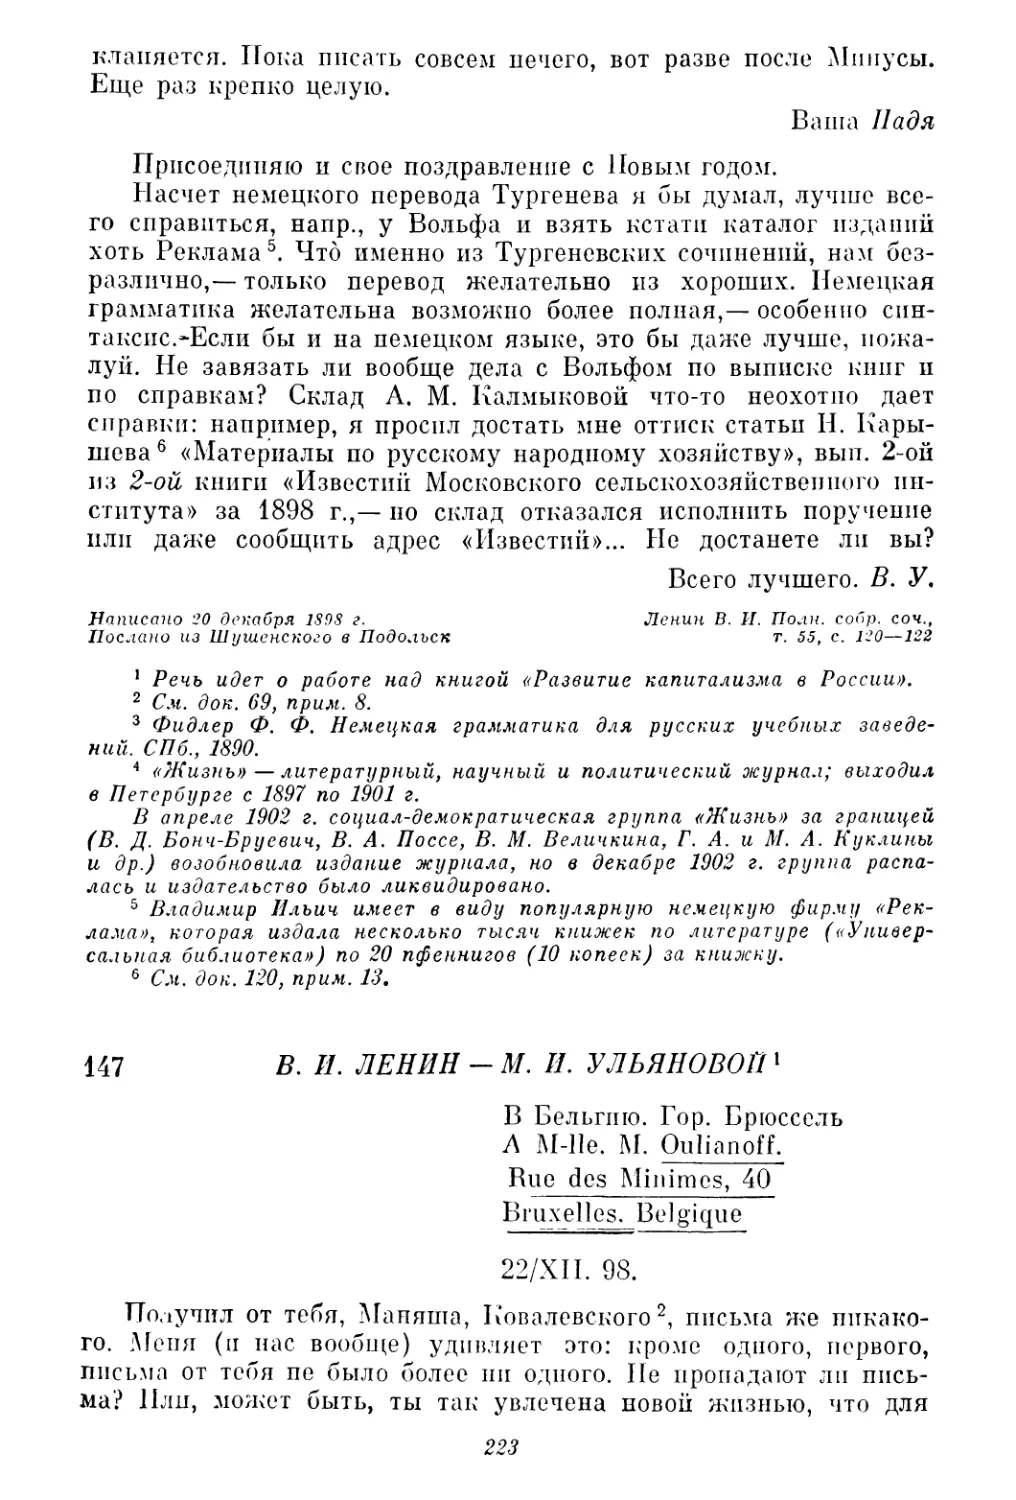 147. В. И. Ленин — М. И. Ульяновой. 22 и 28 декабря